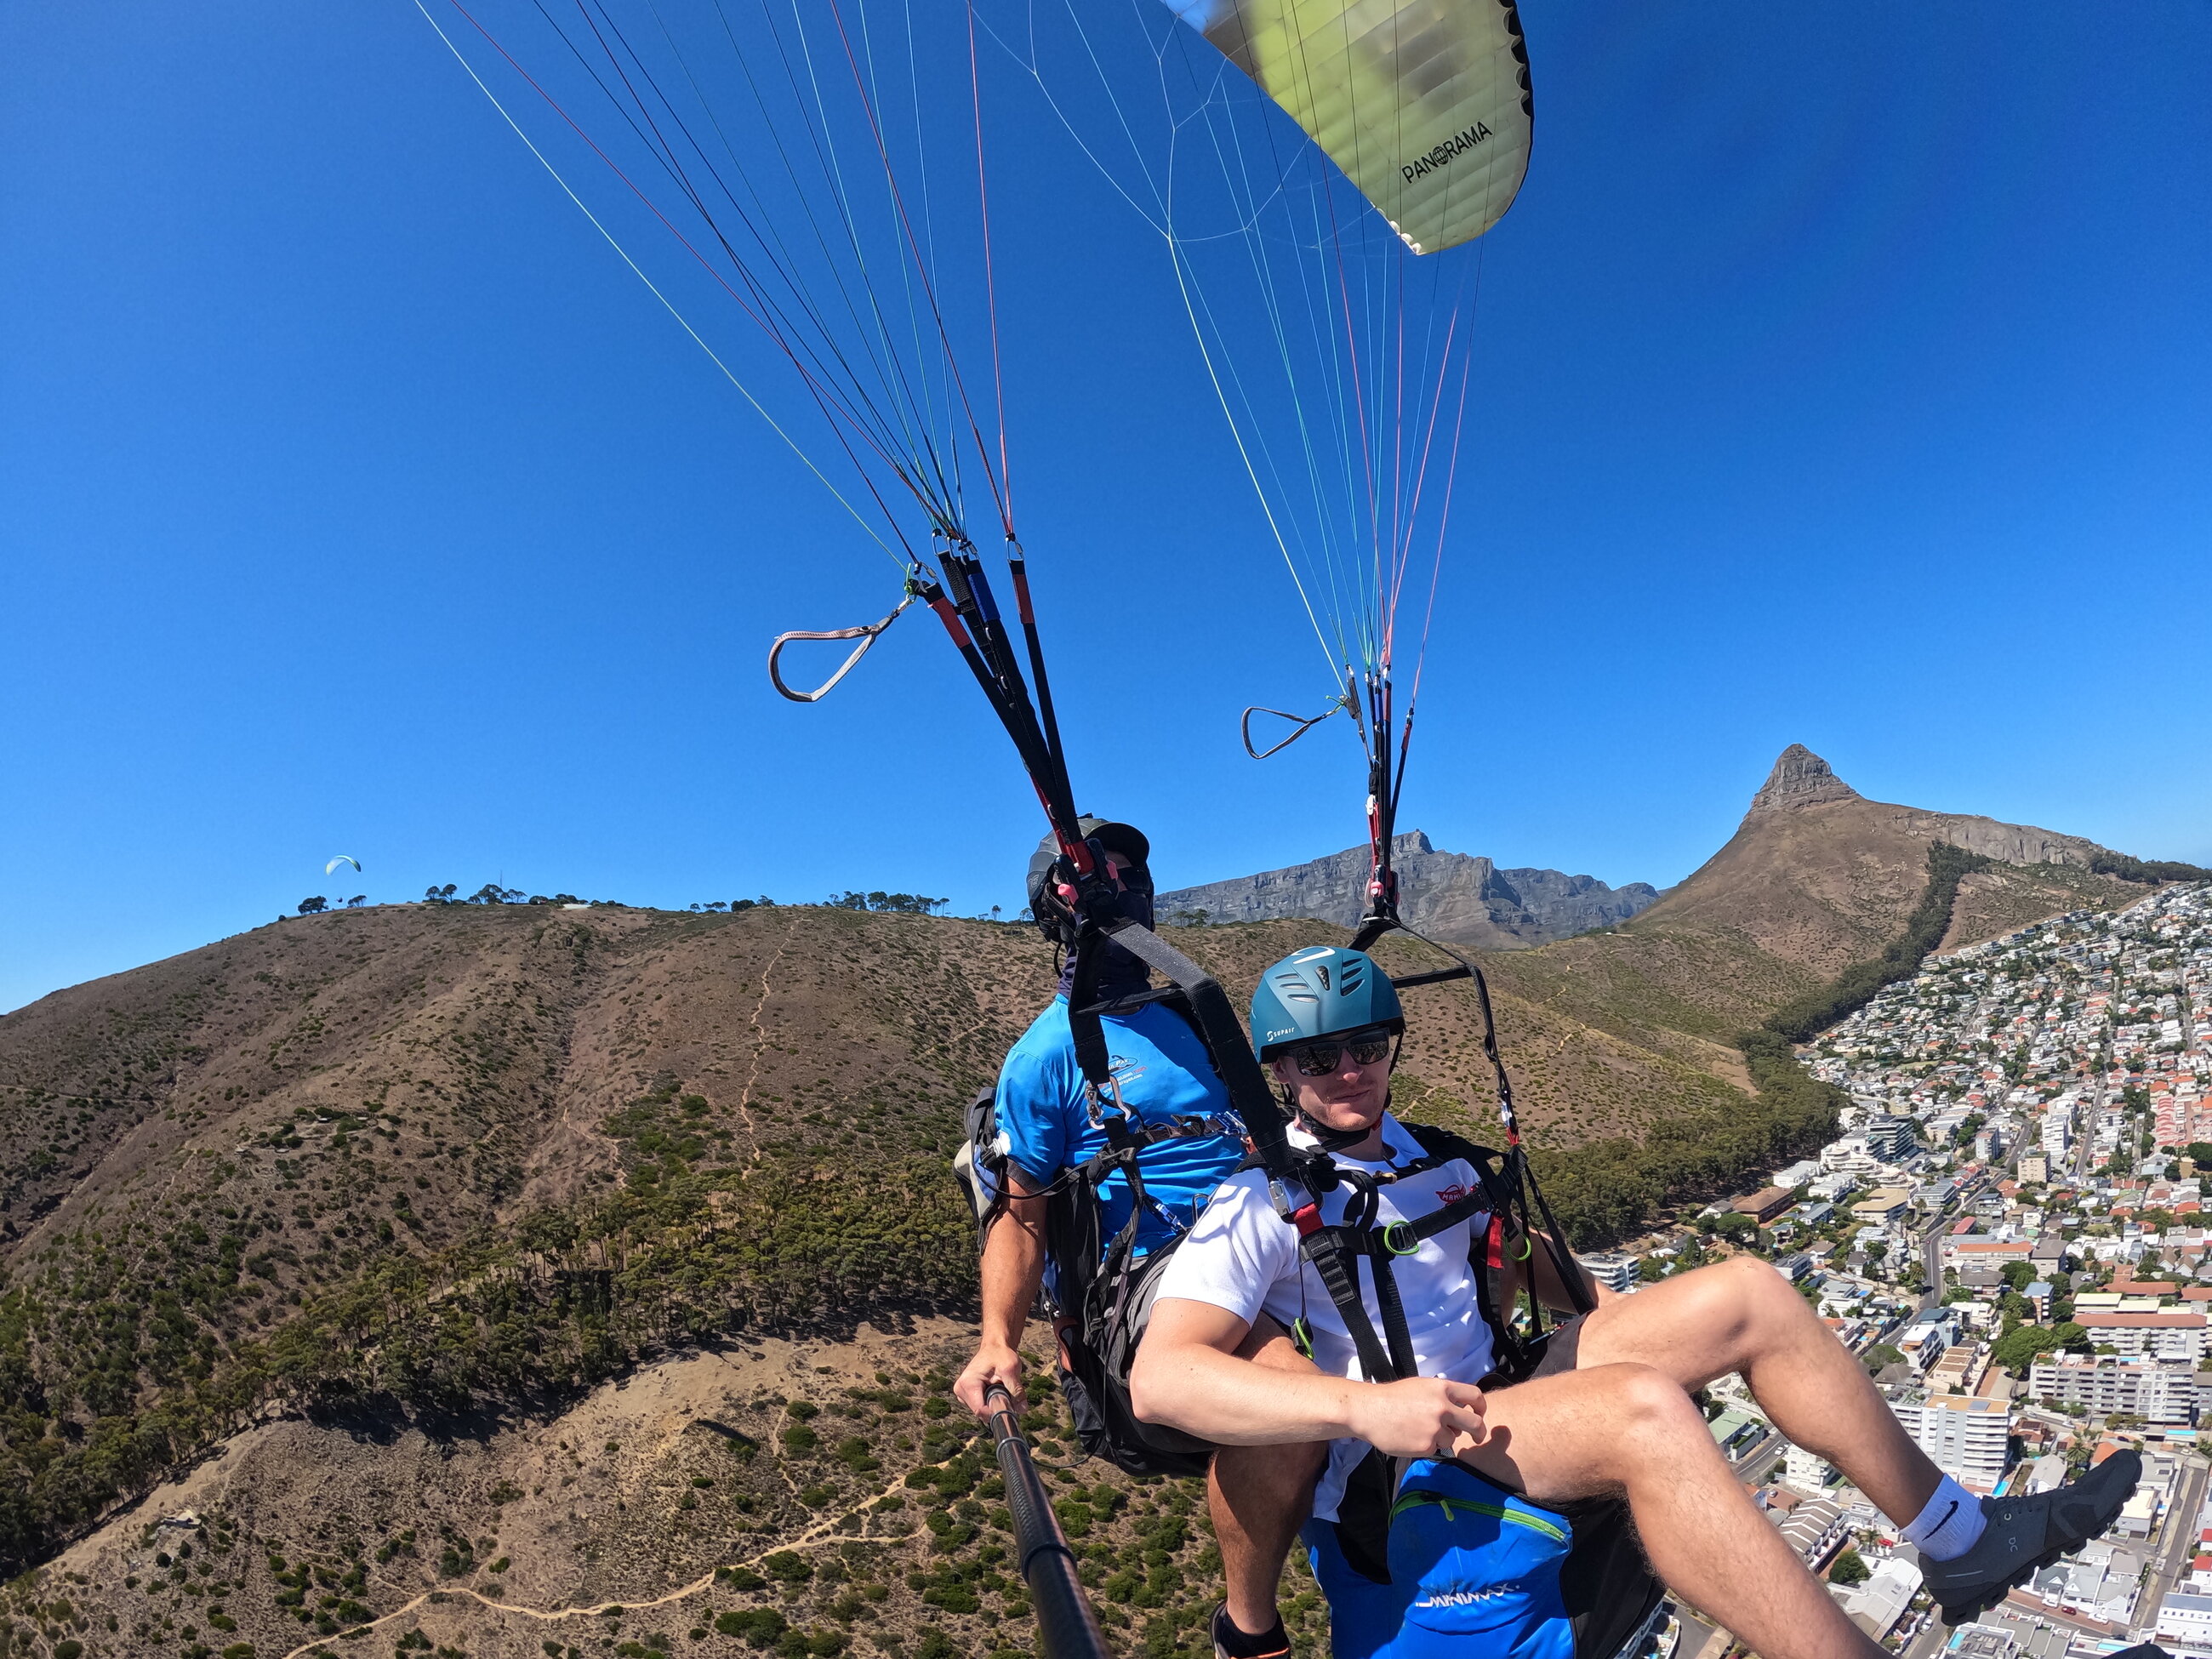 Paragliding off Lions Head, Cape Town